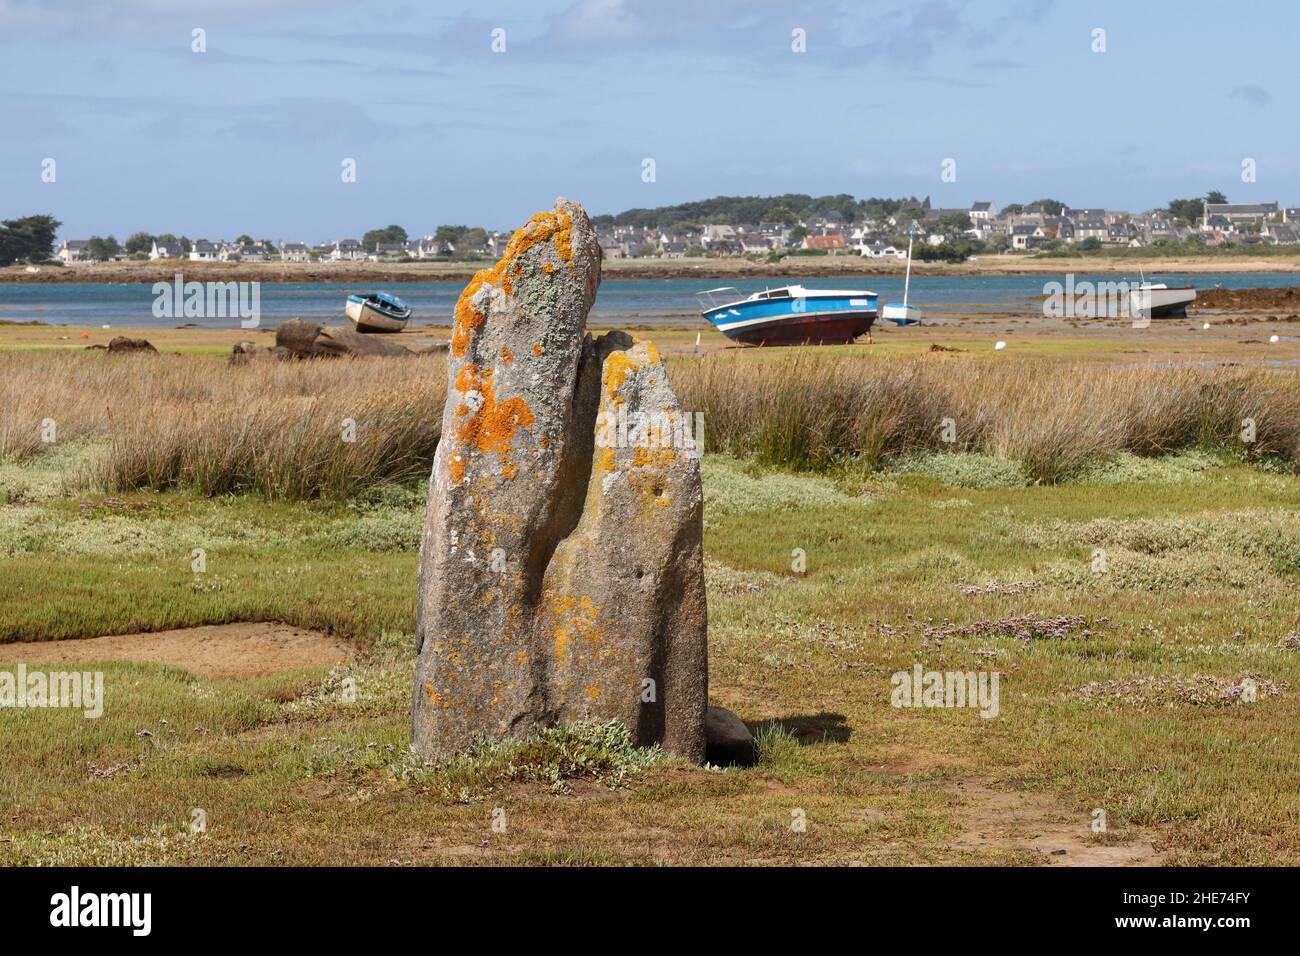 Menhir de Toeno - monument mégalithique - menhir solitaire sur la côte à Trebeurden en Bretagne, France Banque D'Images